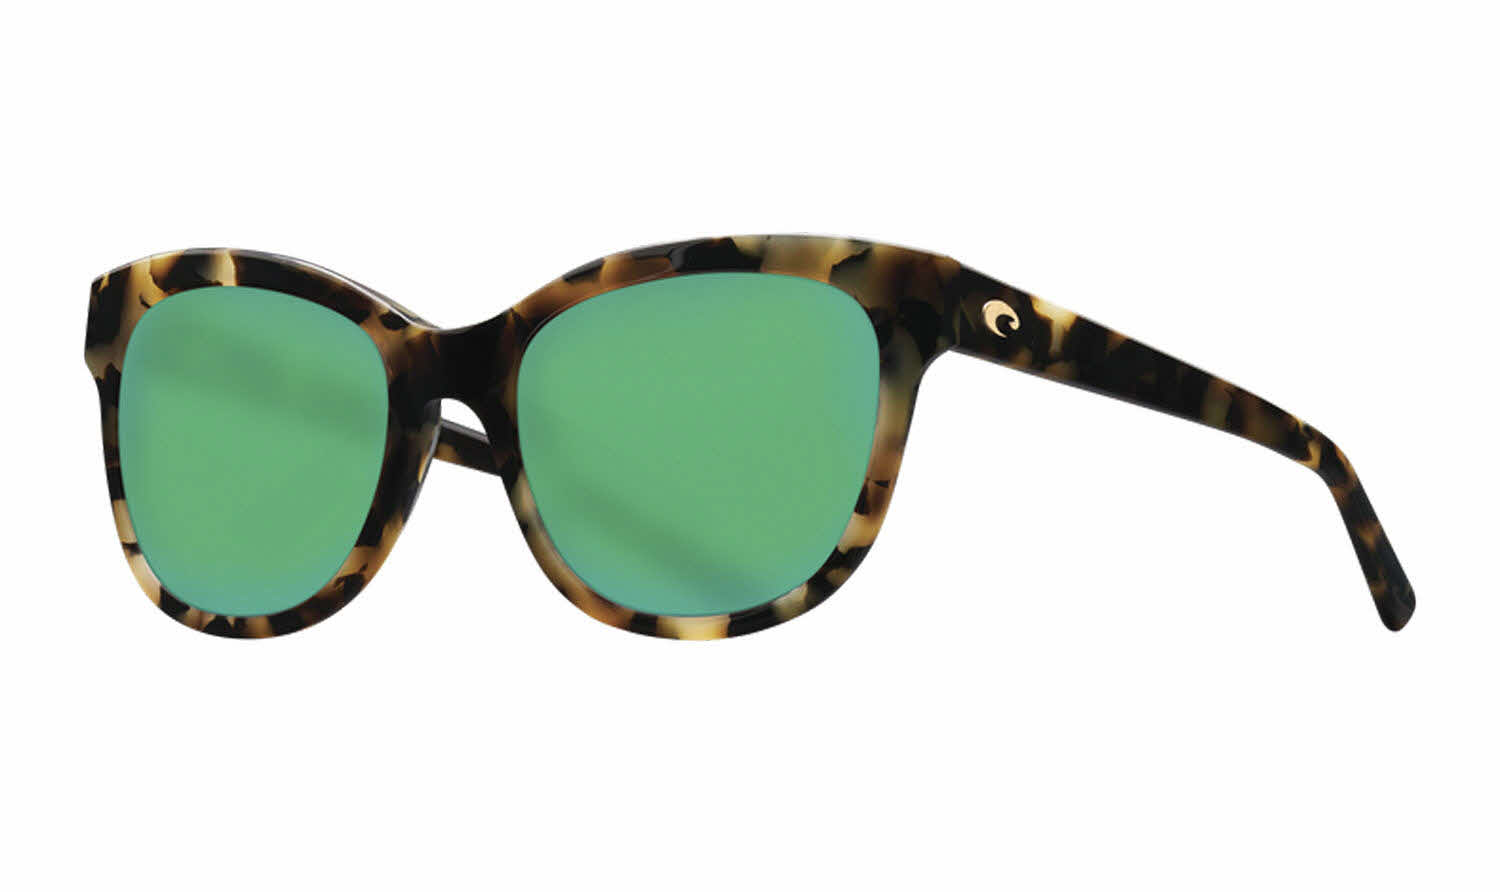 Costa Bimini - Del Mar Collection Sunglasses